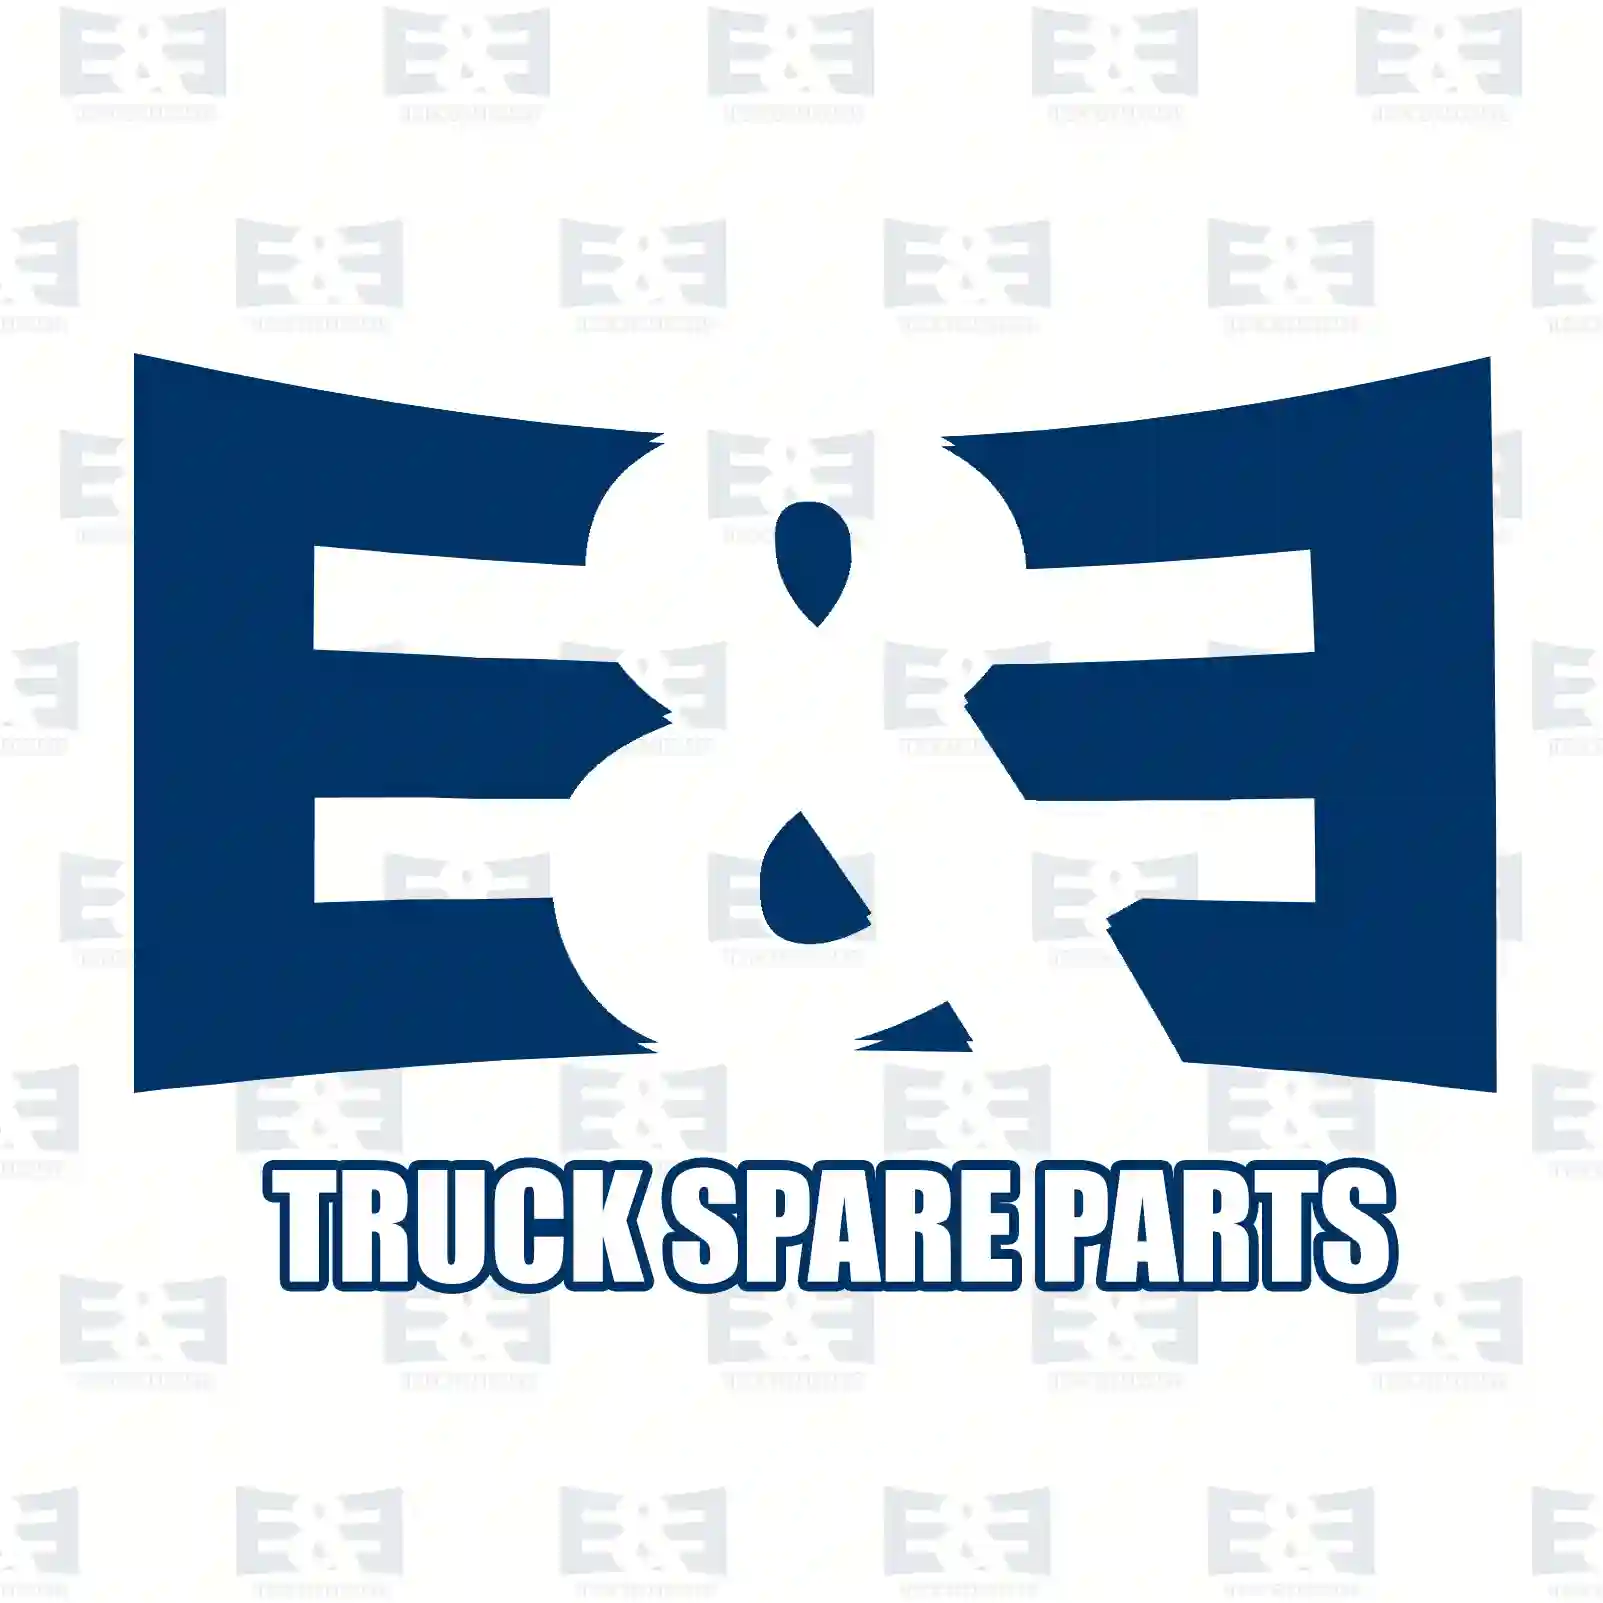 Wiper blade, 2E2280006, ABU8833, ZG21305-0008 ||  2E2280006 E&E Truck Spare Parts | Truck Spare Parts, Auotomotive Spare Parts Wiper blade, 2E2280006, ABU8833, ZG21305-0008 ||  2E2280006 E&E Truck Spare Parts | Truck Spare Parts, Auotomotive Spare Parts